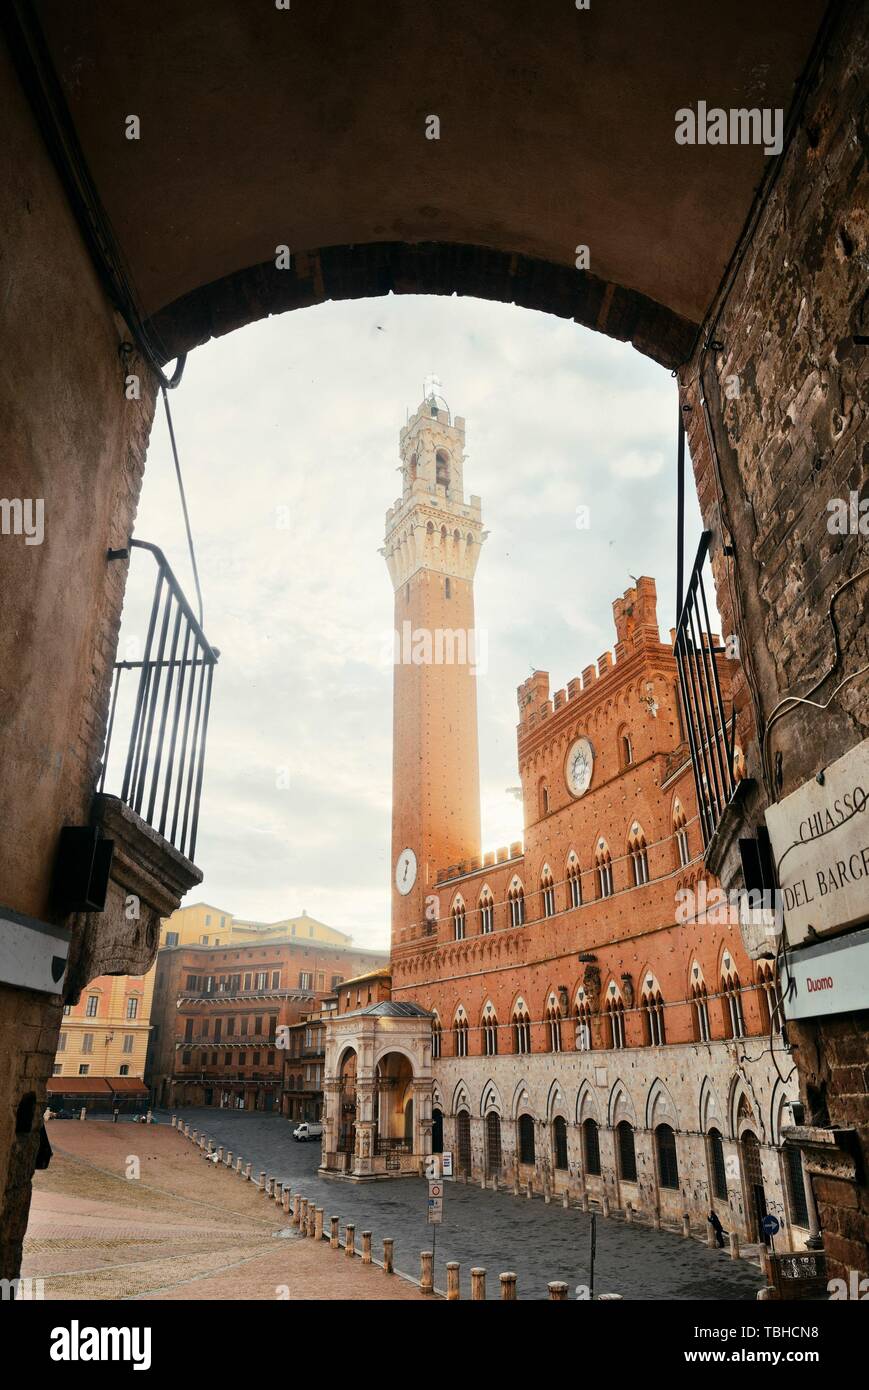 Clocher de l'Hôtel de ville vue de l'arche à Sienne en Italie. Banque D'Images